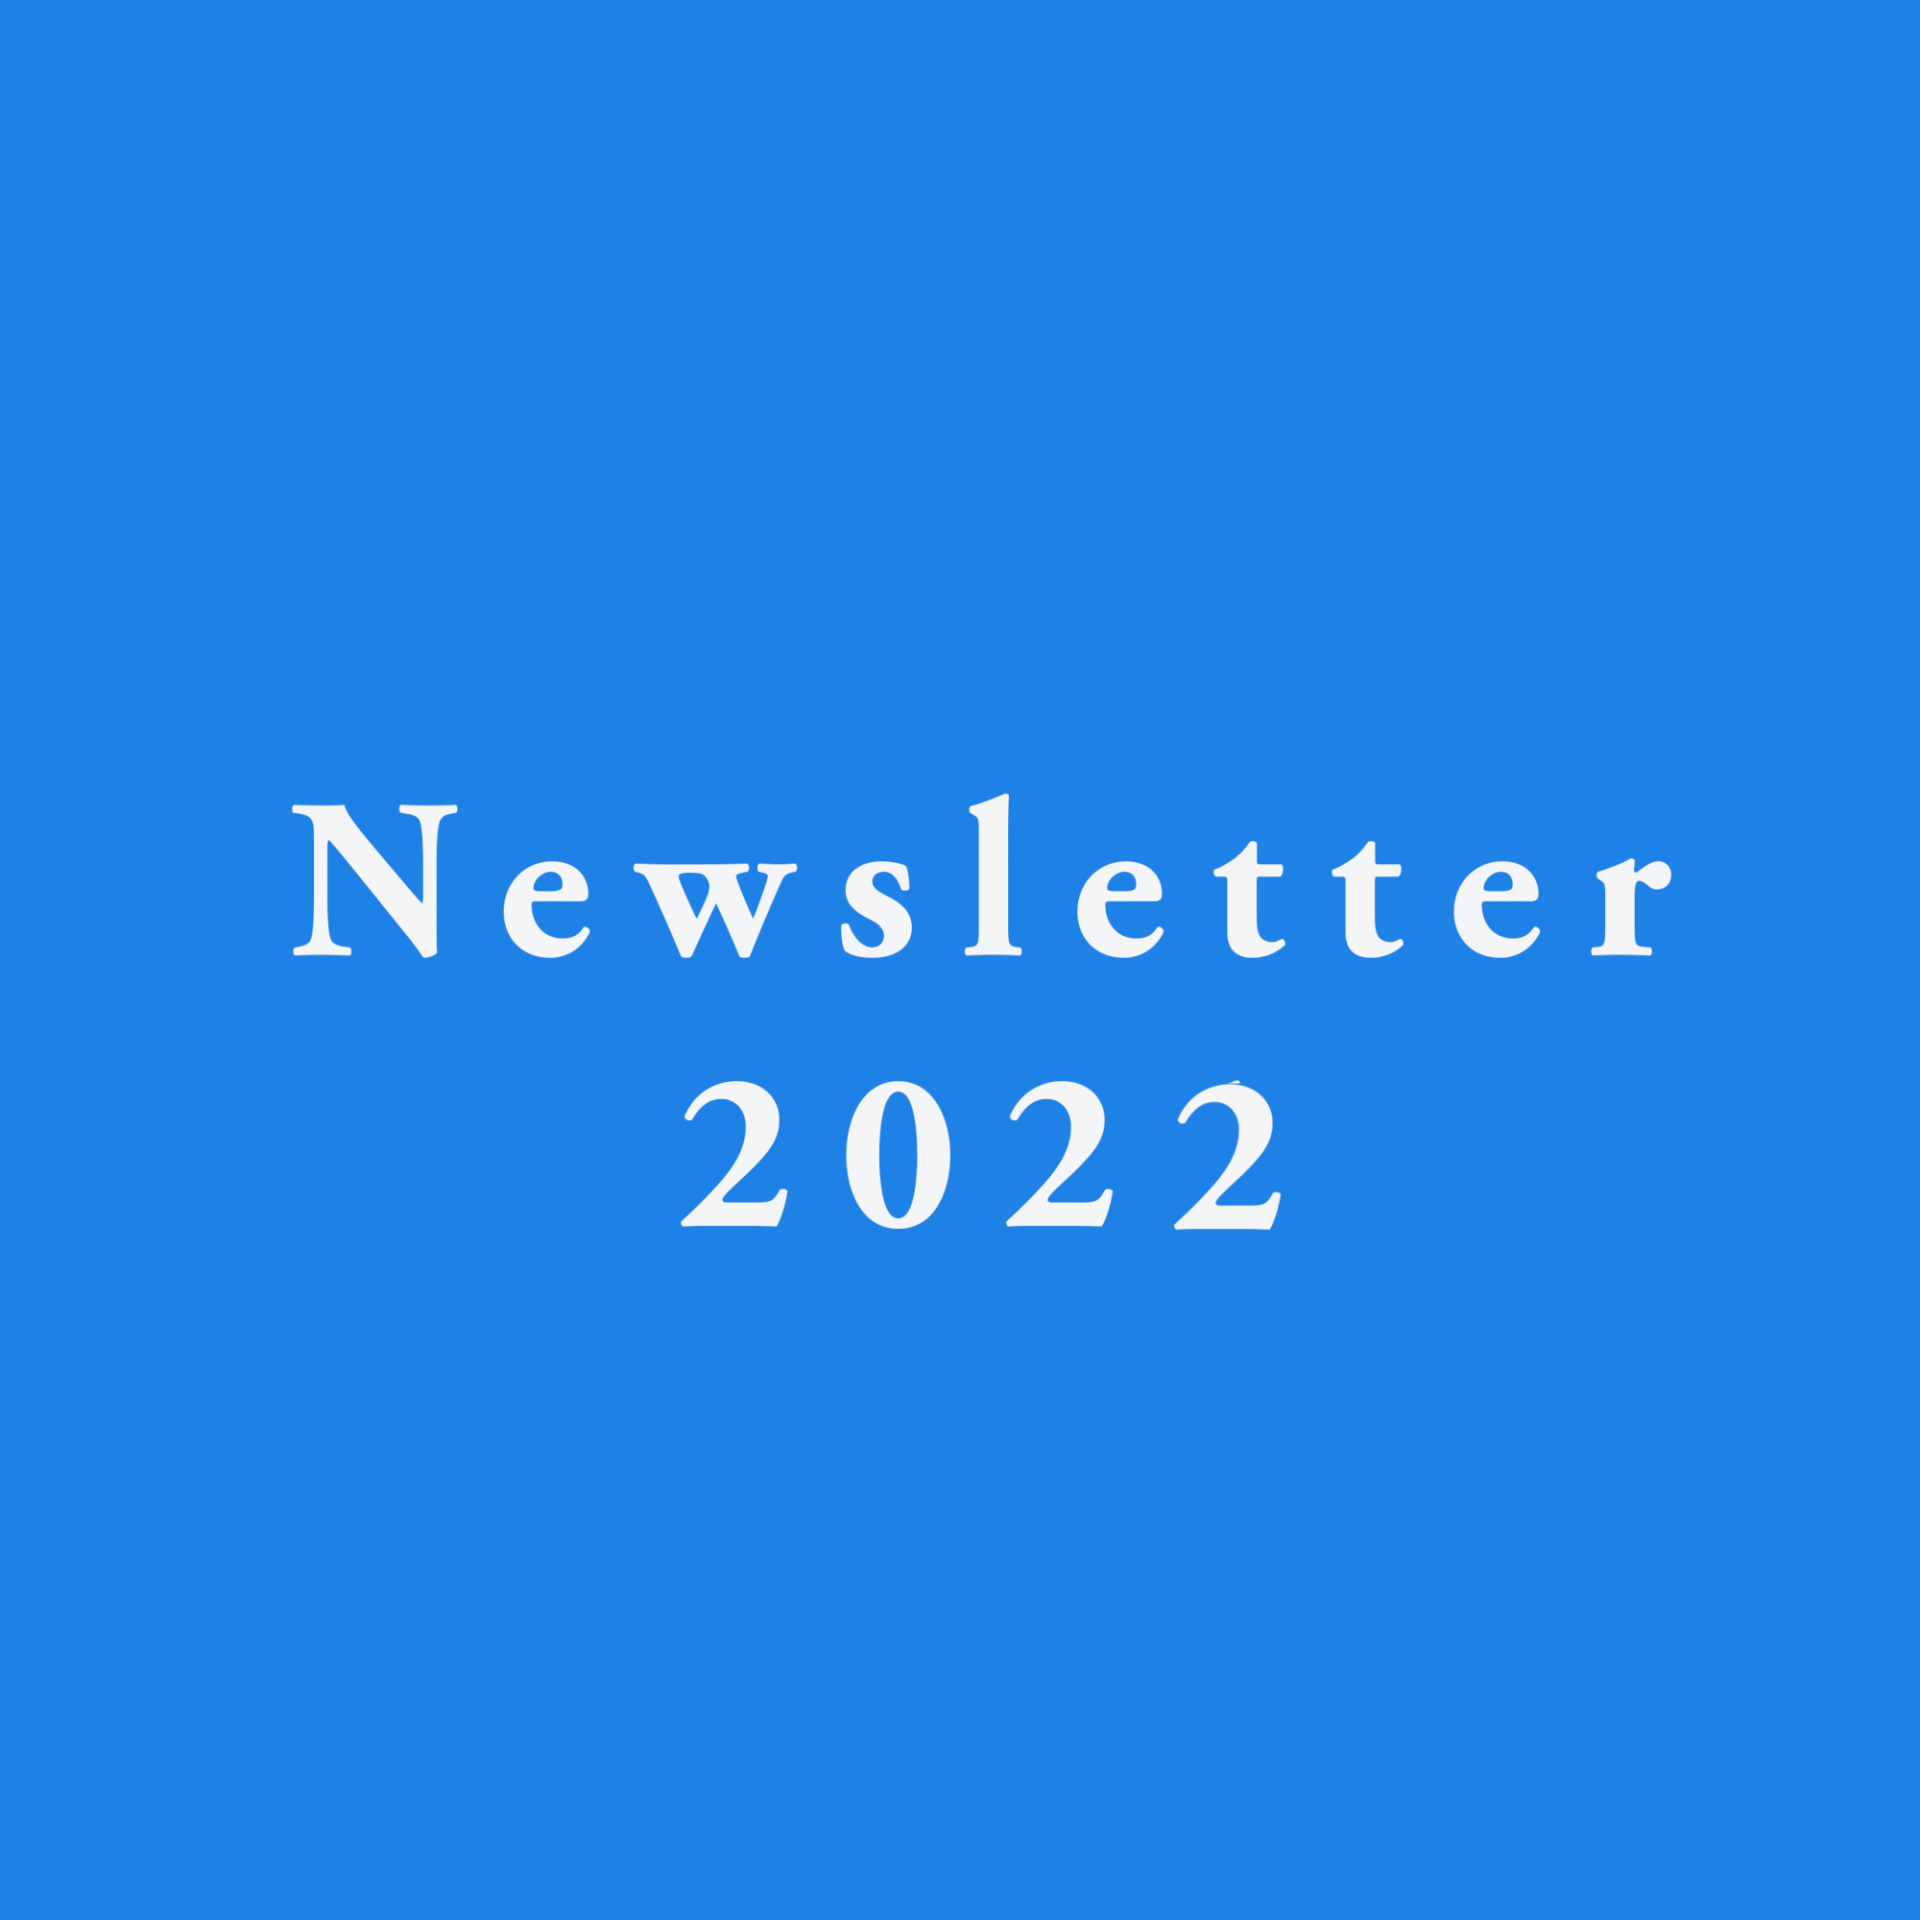 Newsletter 2022 - April 